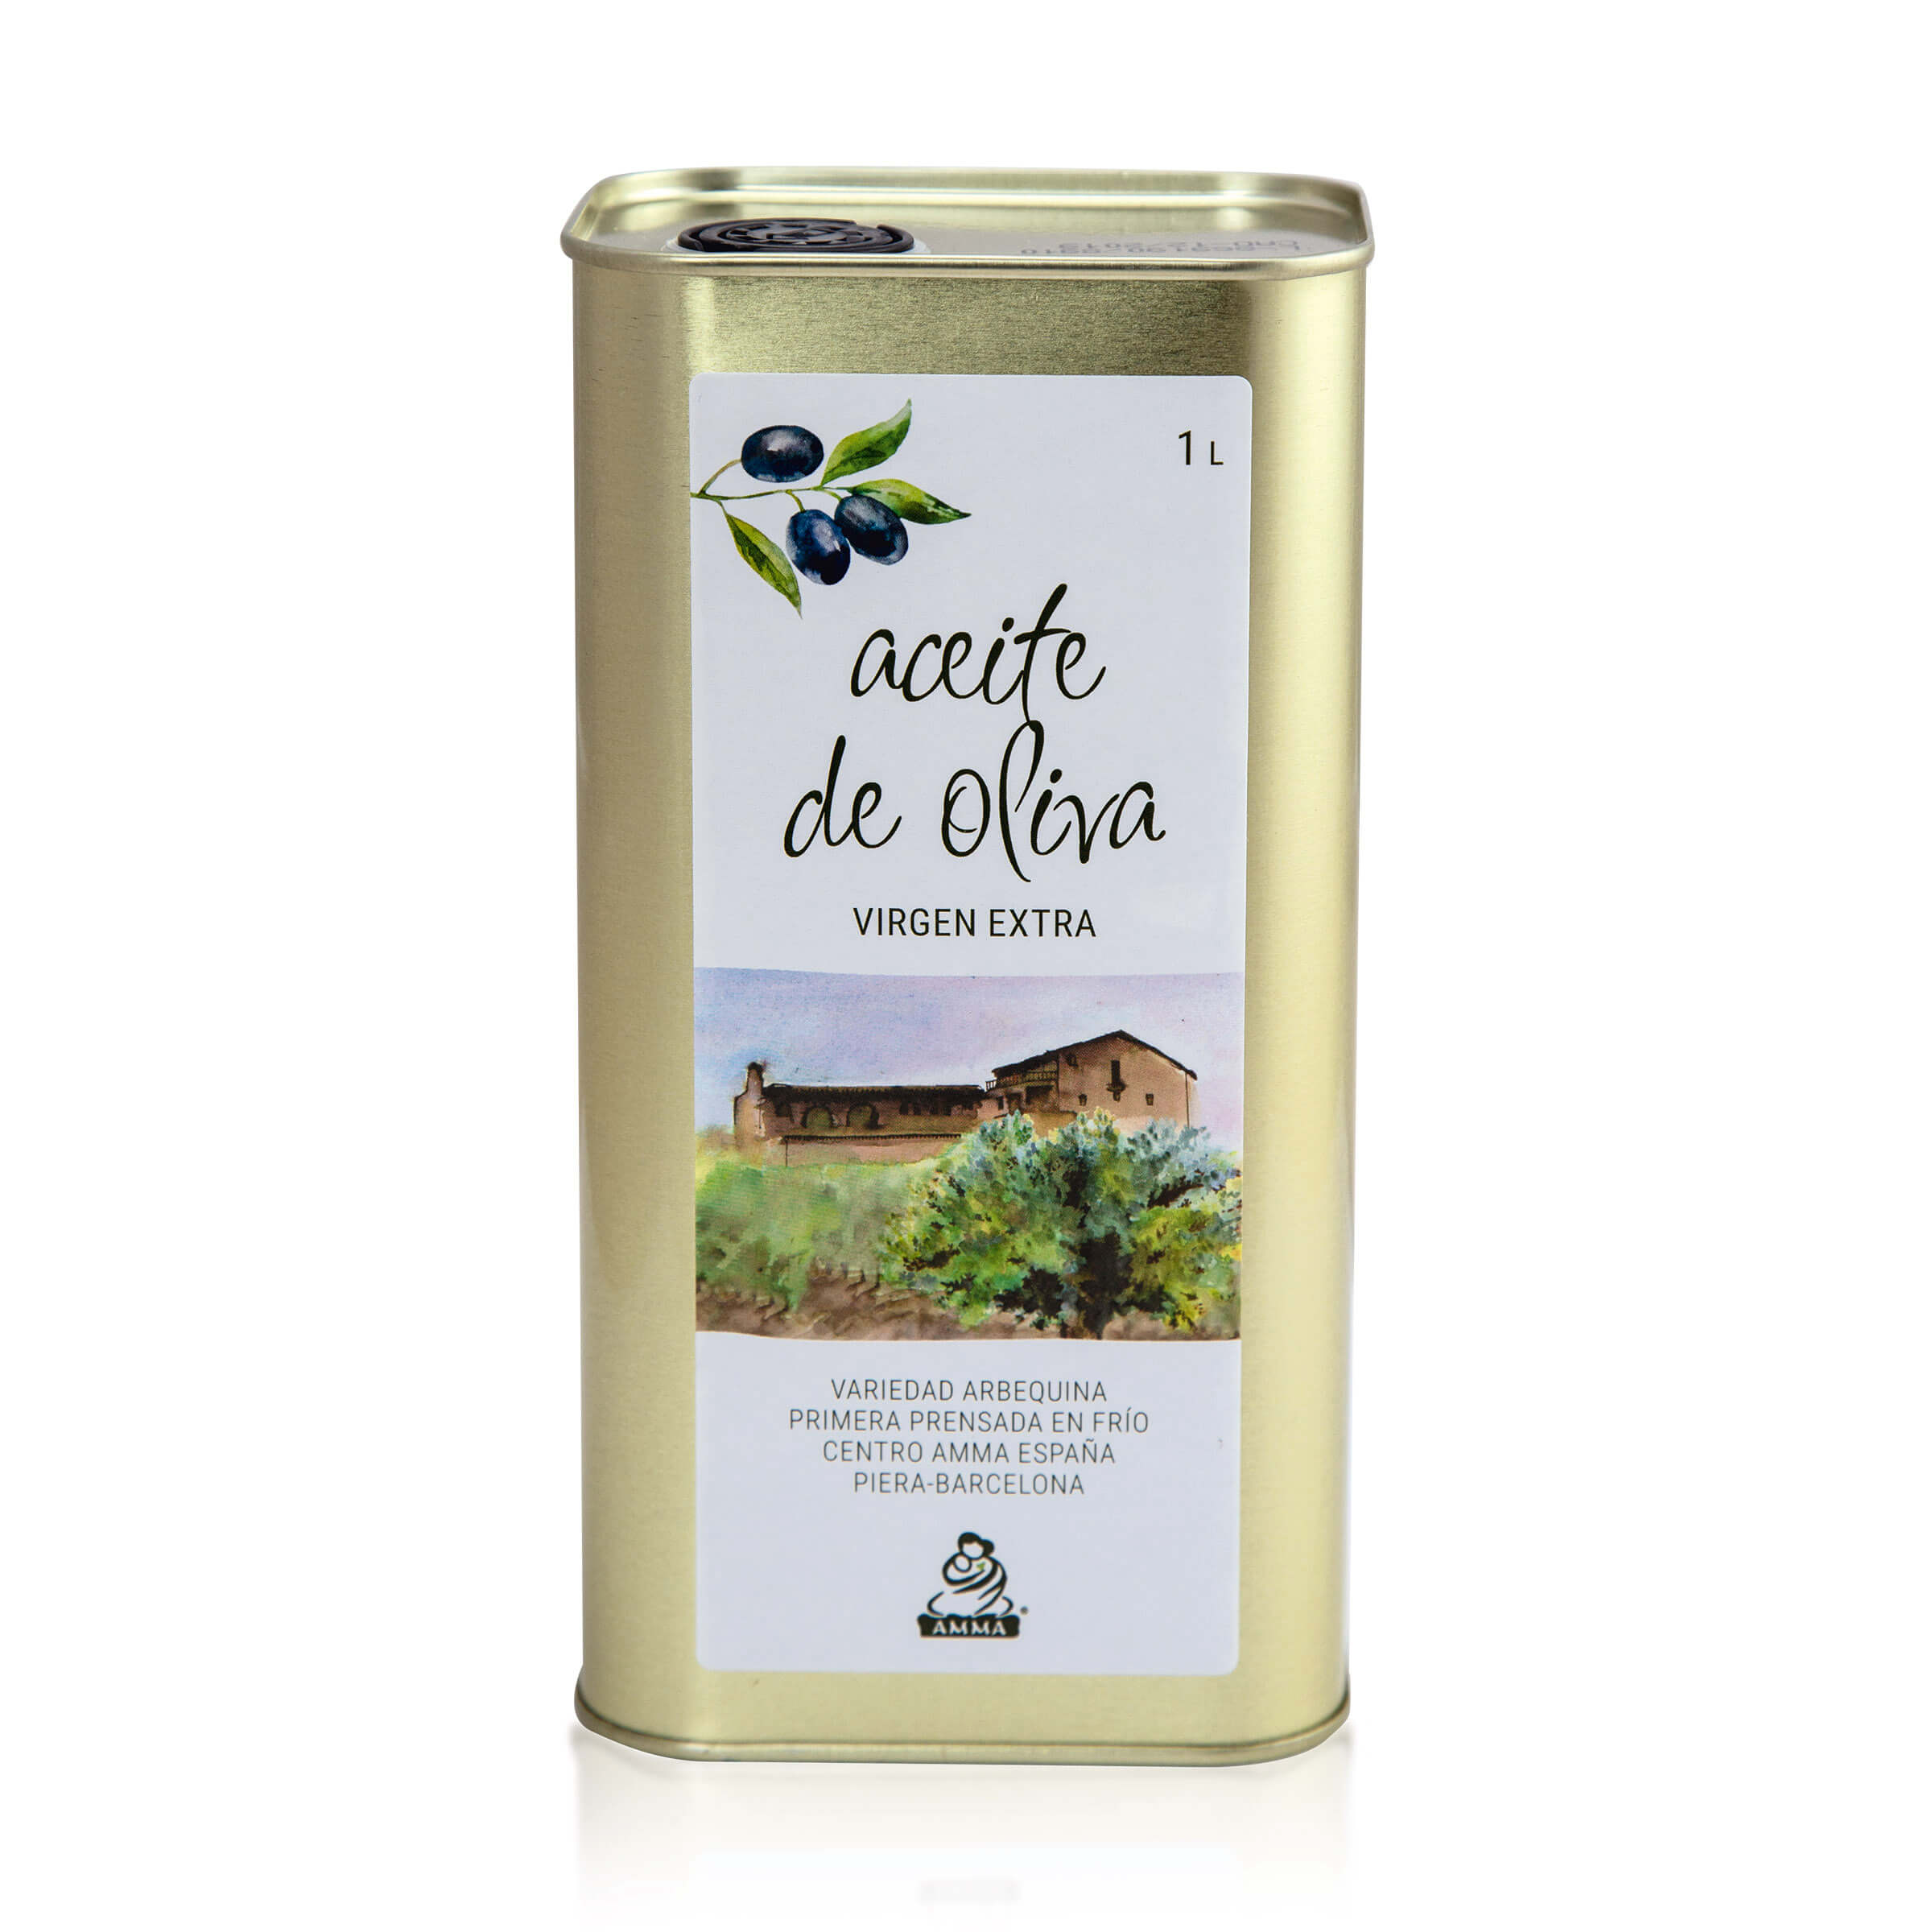 Spanish Virgin Olive Oil Extra 1 Liter 